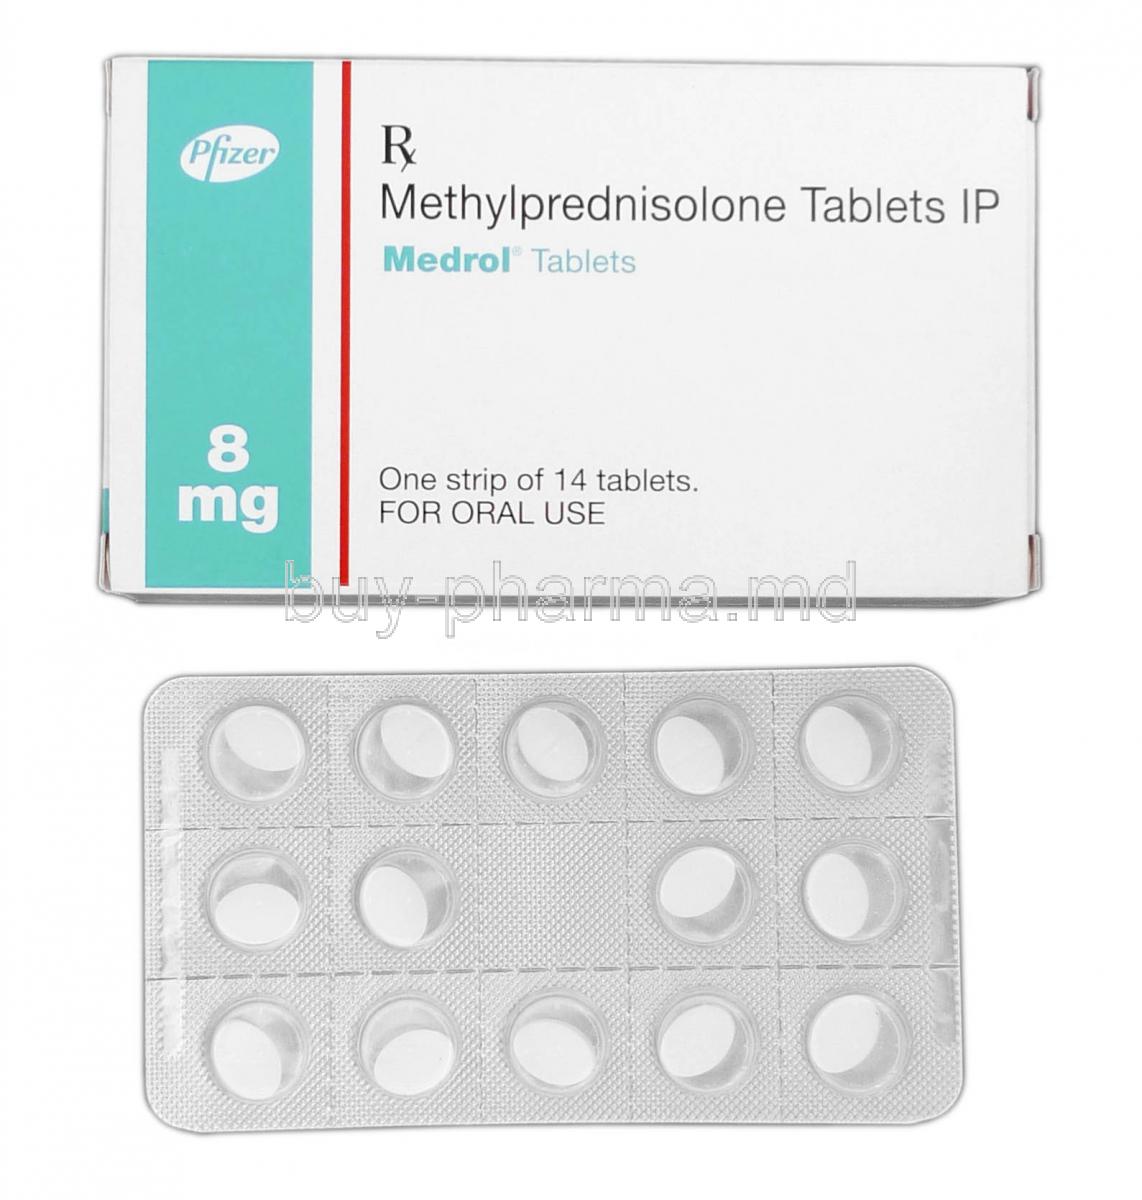 Medrol, Branded Medrol, Methylprednisolone 8mg, Box and Strip